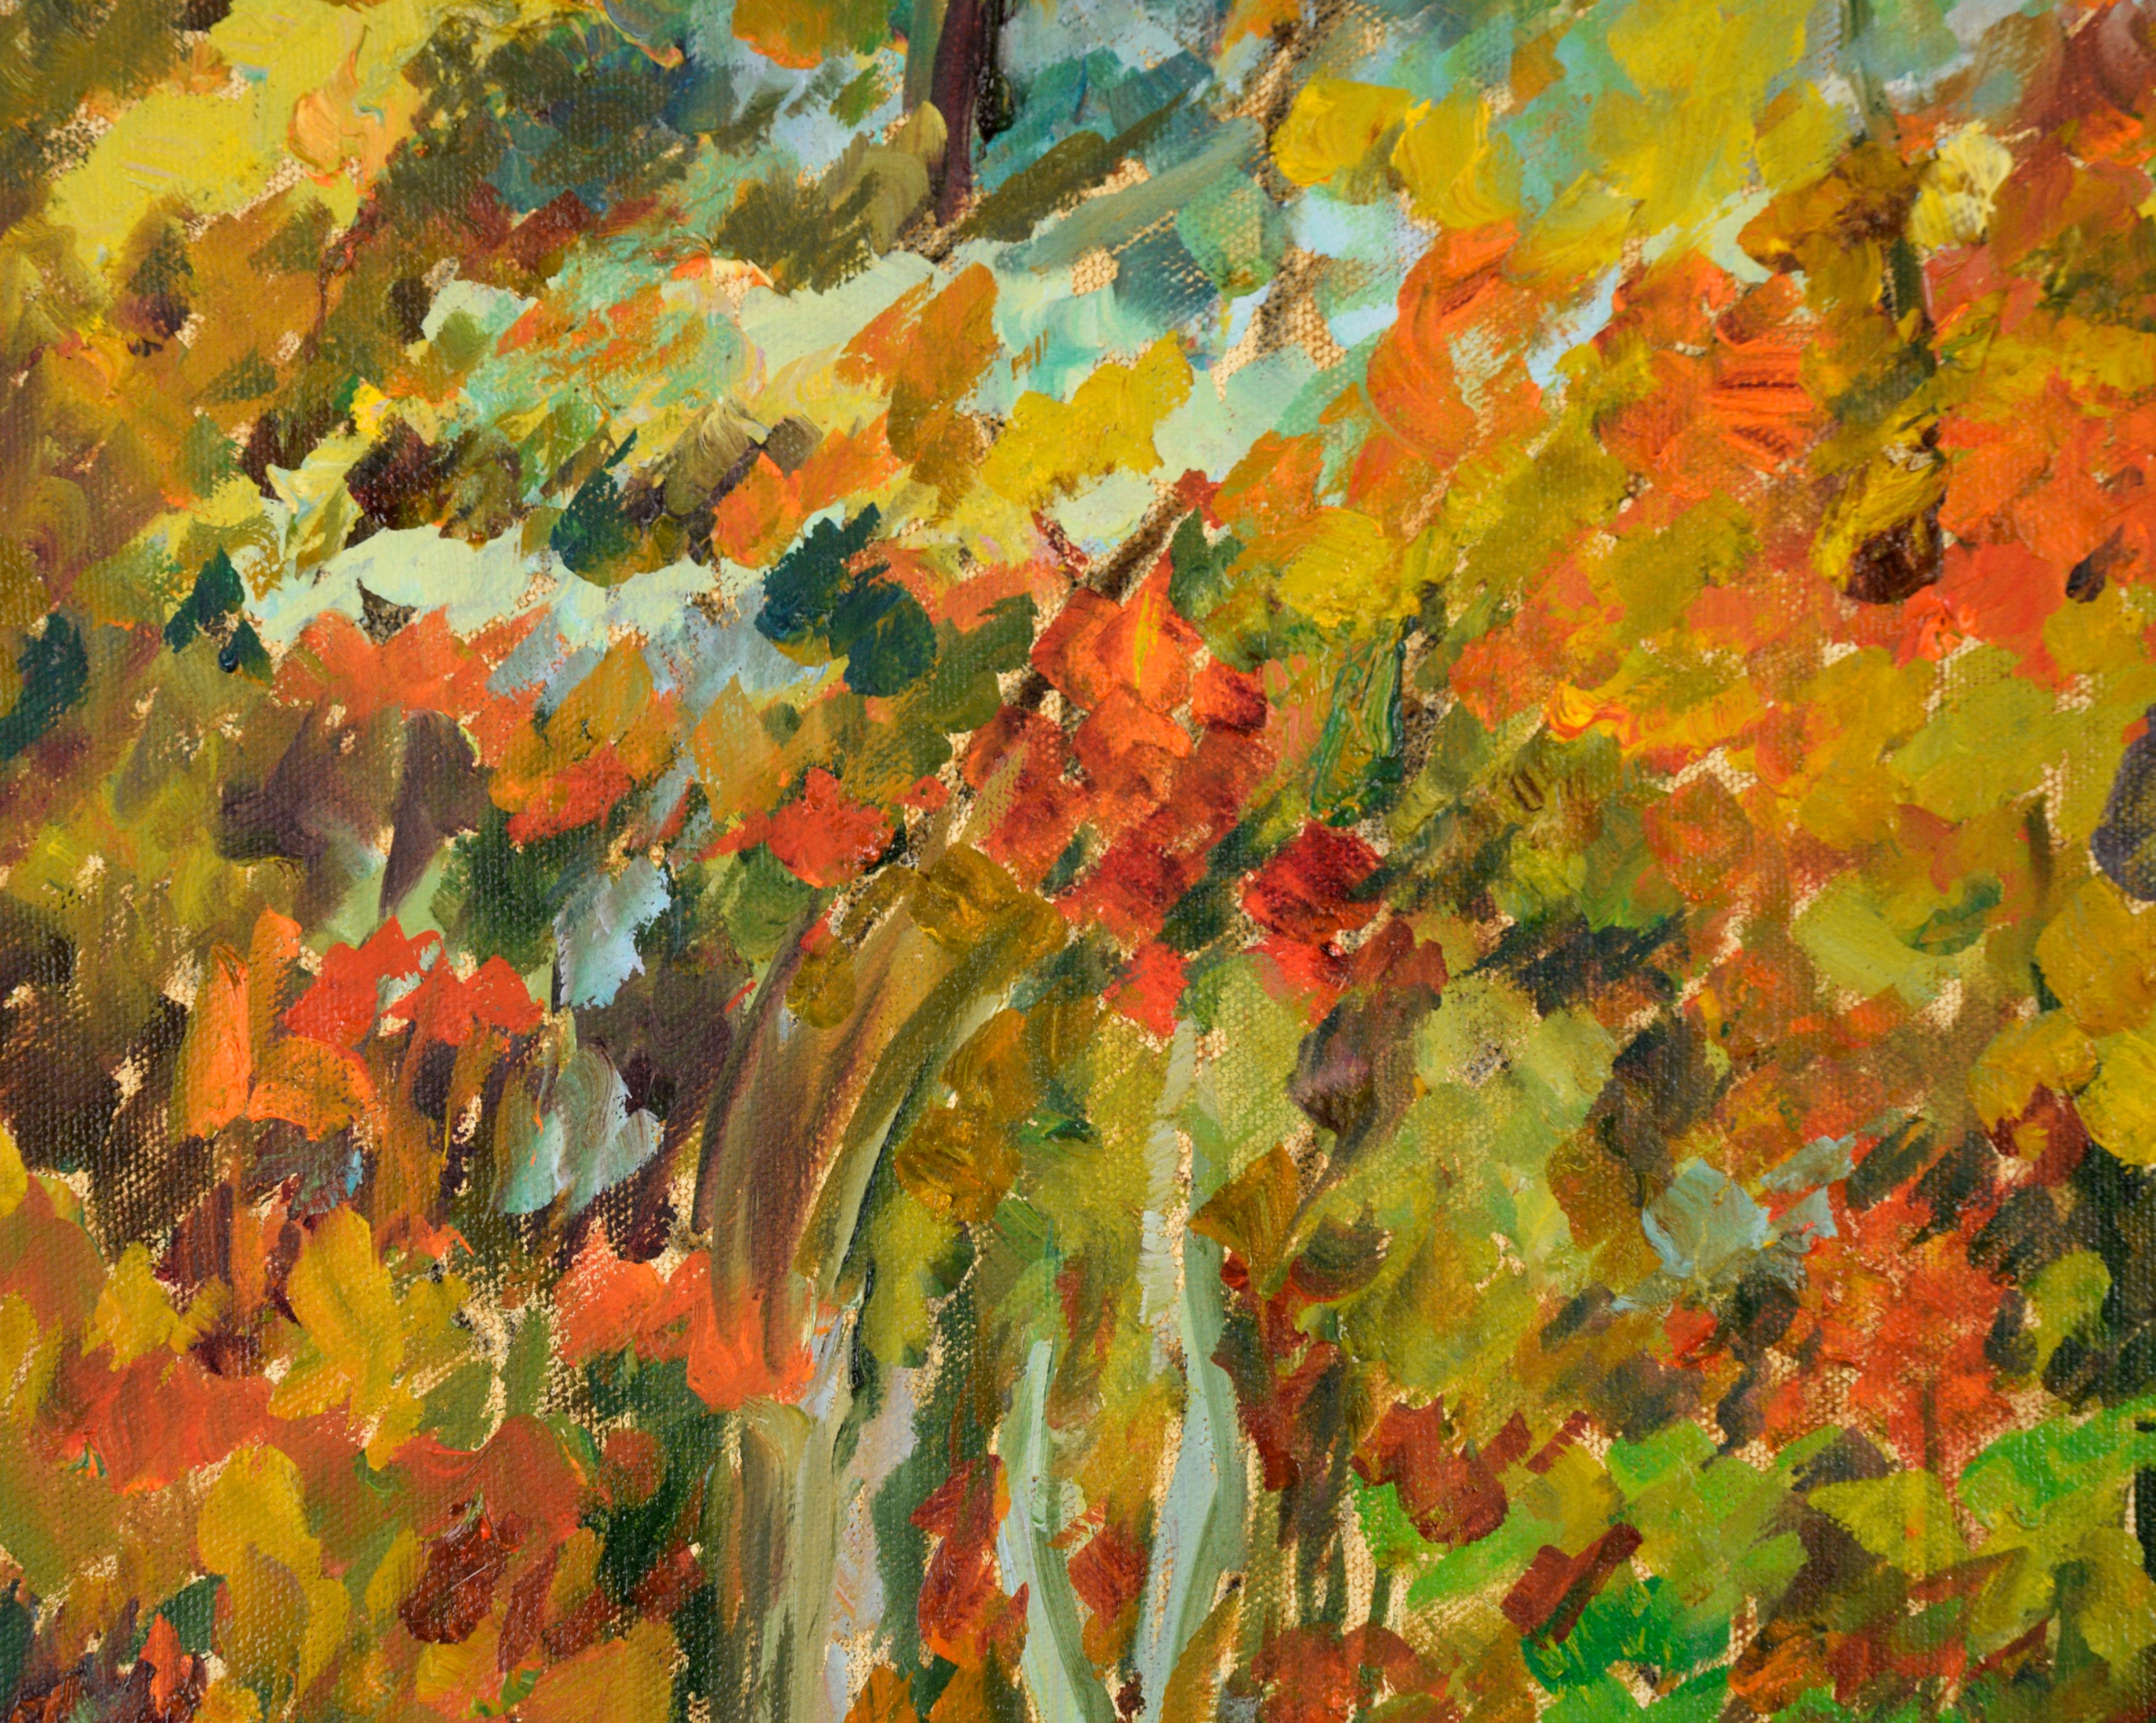 Paysage d'automne aux couleurs vives d'un artiste inconnu (20e siècle). Un ruisseau tranquille coule au centre de la composition, attirant le spectateur dans la scène. Les arbres et le feuillage environnant sont constitués de traits courts et